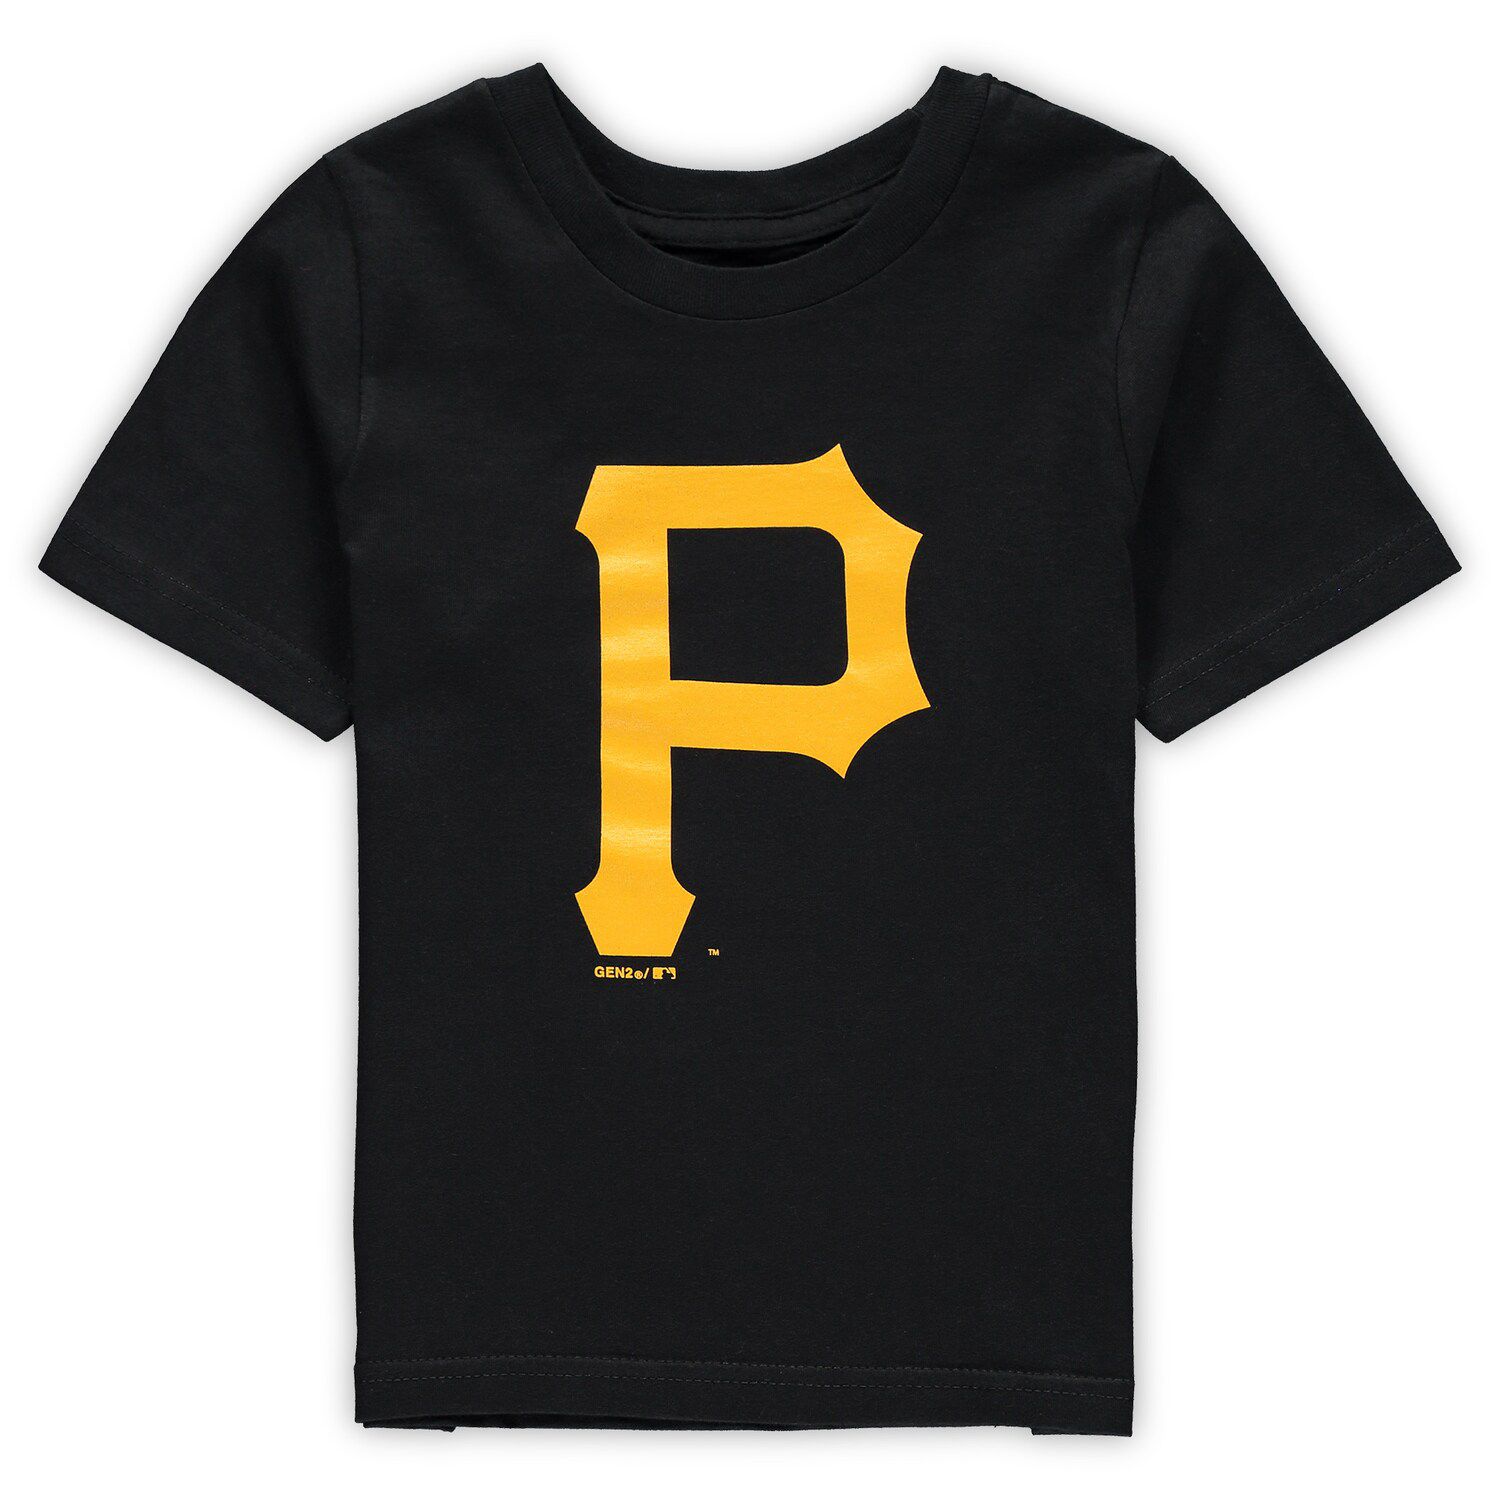 Toddler Black Pittsburgh Pirates 